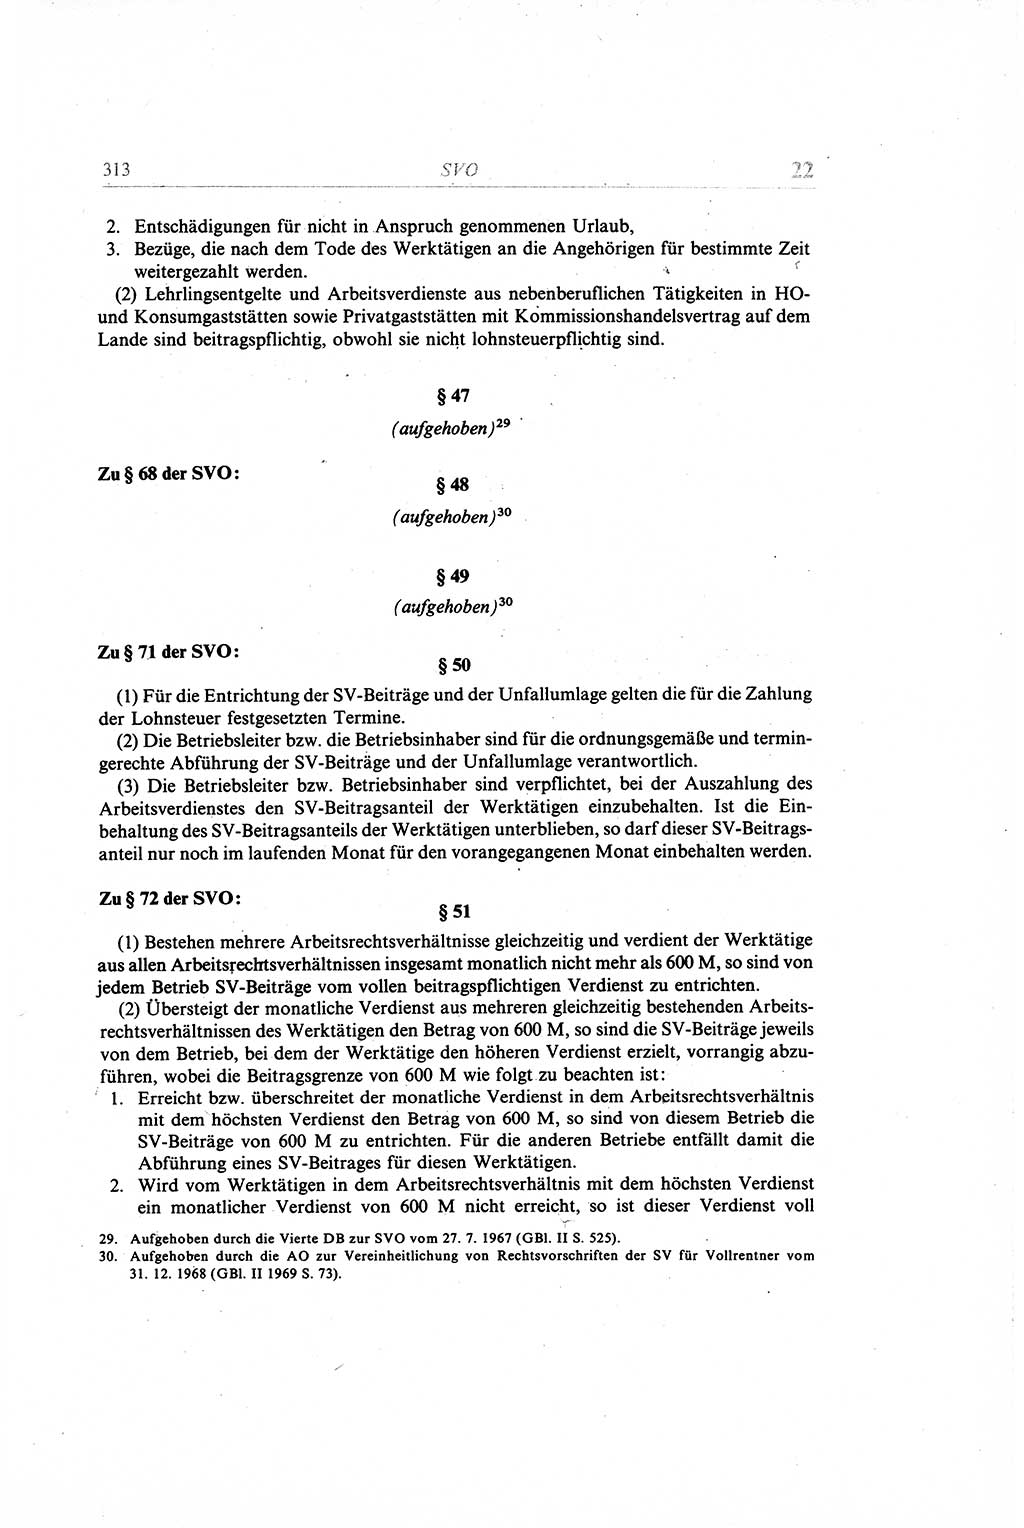 Gesetzbuch der Arbeit (GBA) und andere ausgewählte rechtliche Bestimmungen [Deutsche Demokratische Republik (DDR)] 1968, Seite 313 (GBA DDR 1968, S. 313)